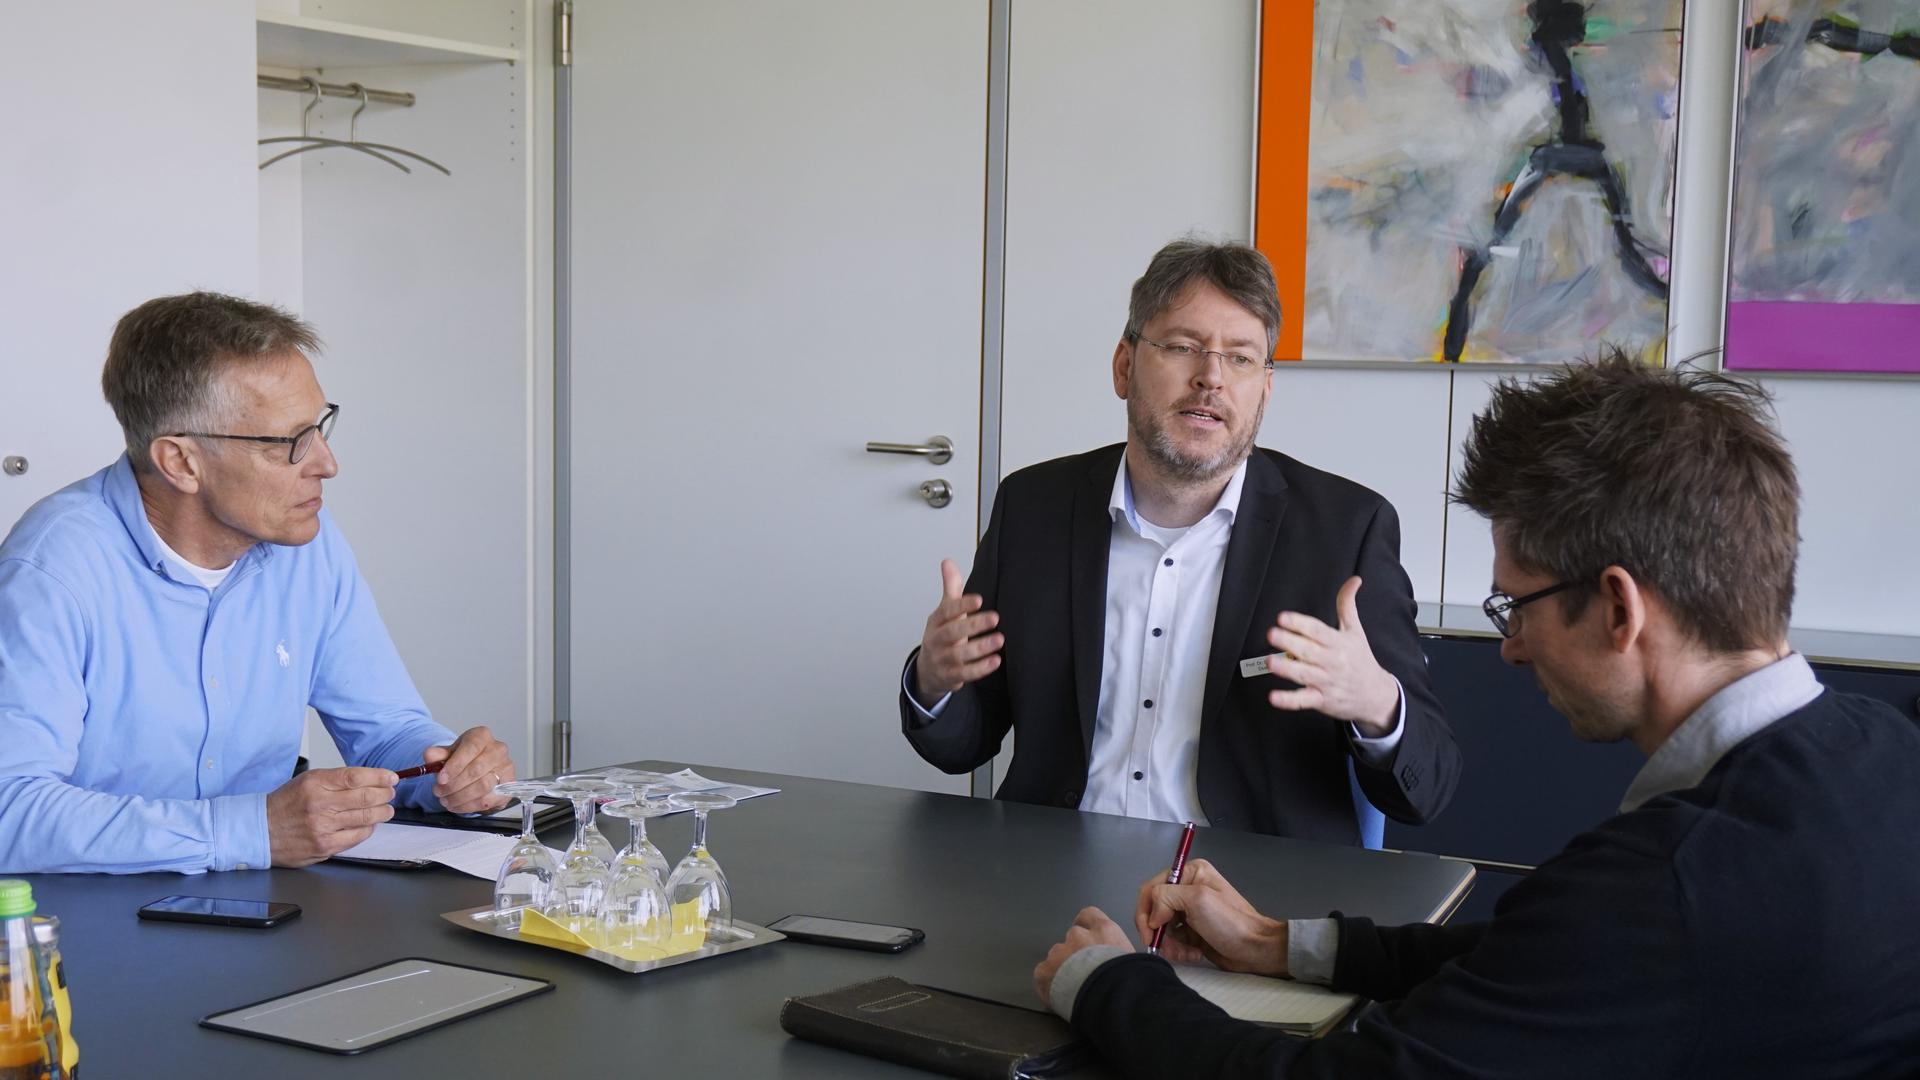 Rastatts Landrat Christian Dusch sitzt am Tisch mit BT-Redakteur Egbert Mauderer und BNN-Redakteur Holger Siebnich